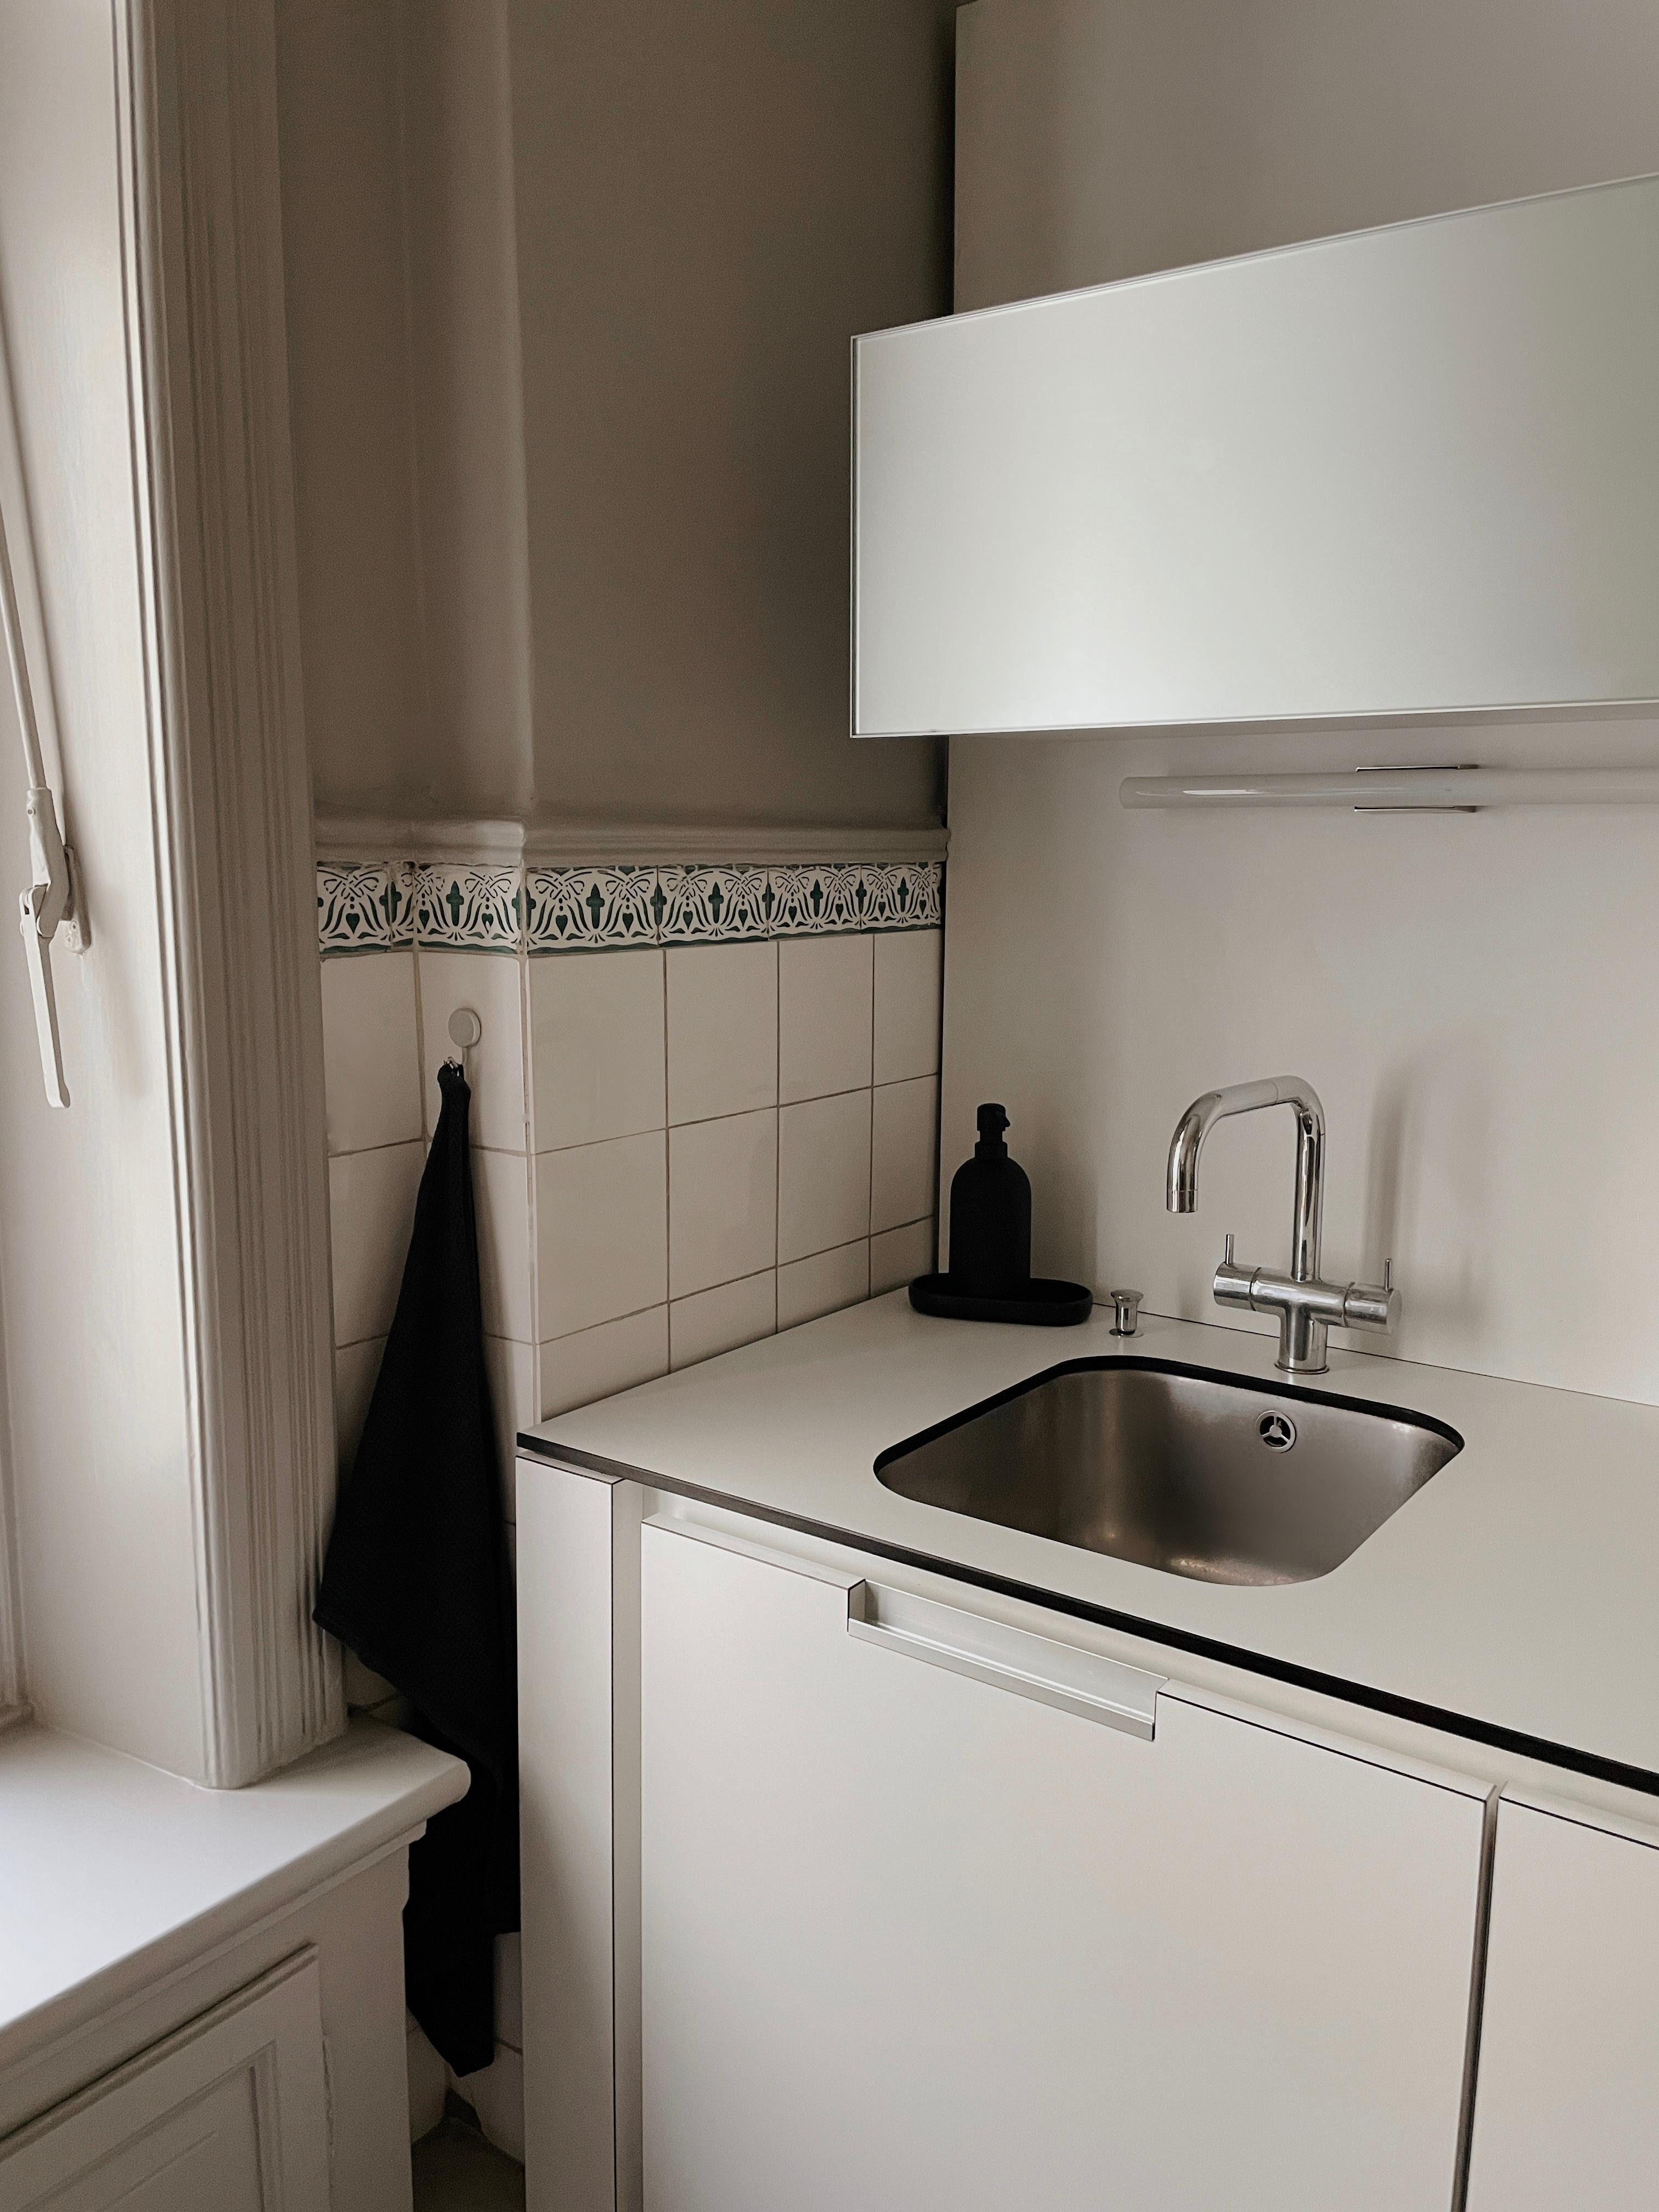 #küche #kitchen #kitcheninspo #meineküche #interiordesign #nordicliving #altbau